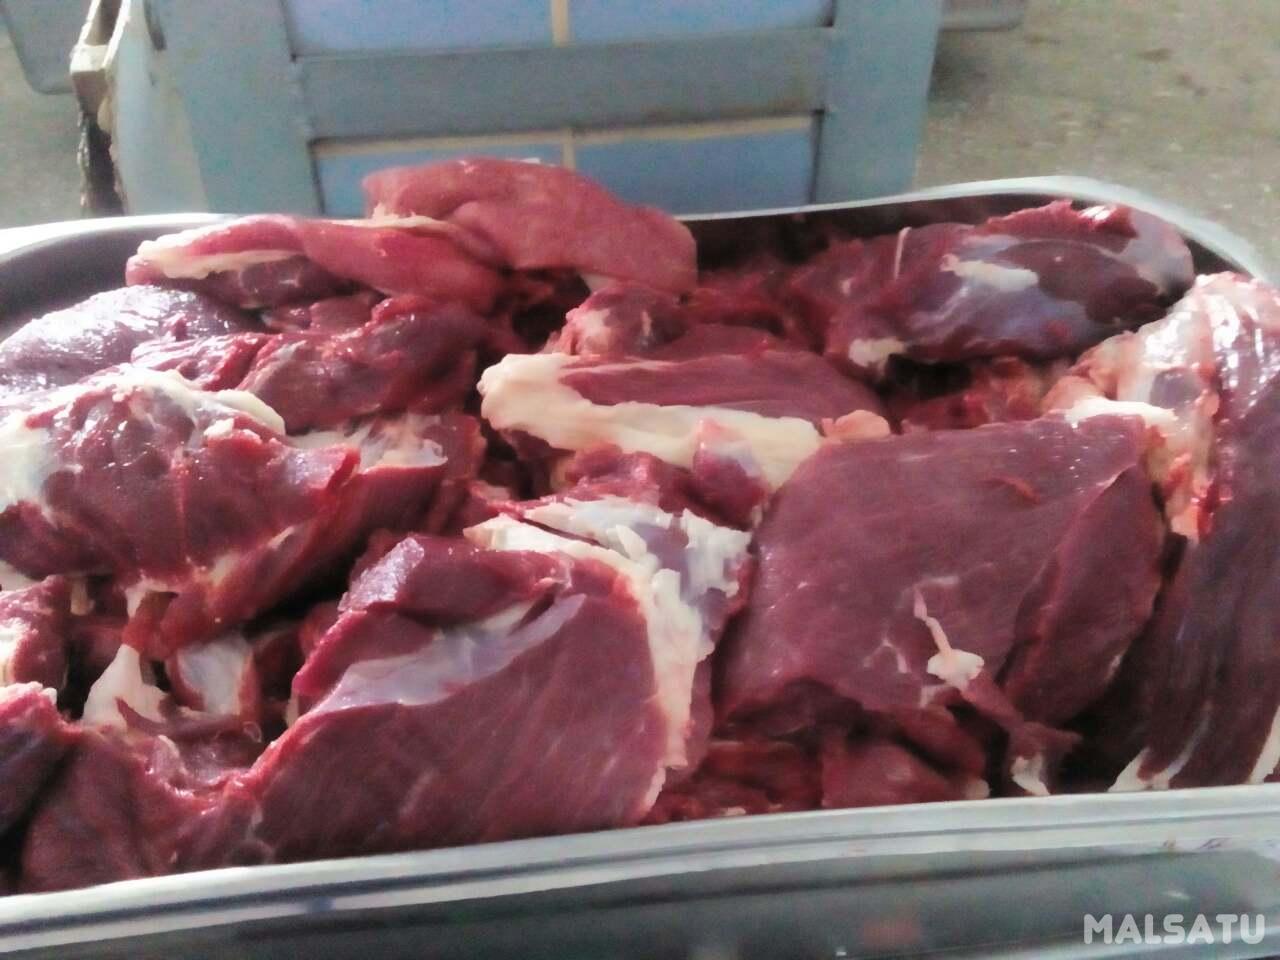 Белорусский производитель предлагает блочную говядину